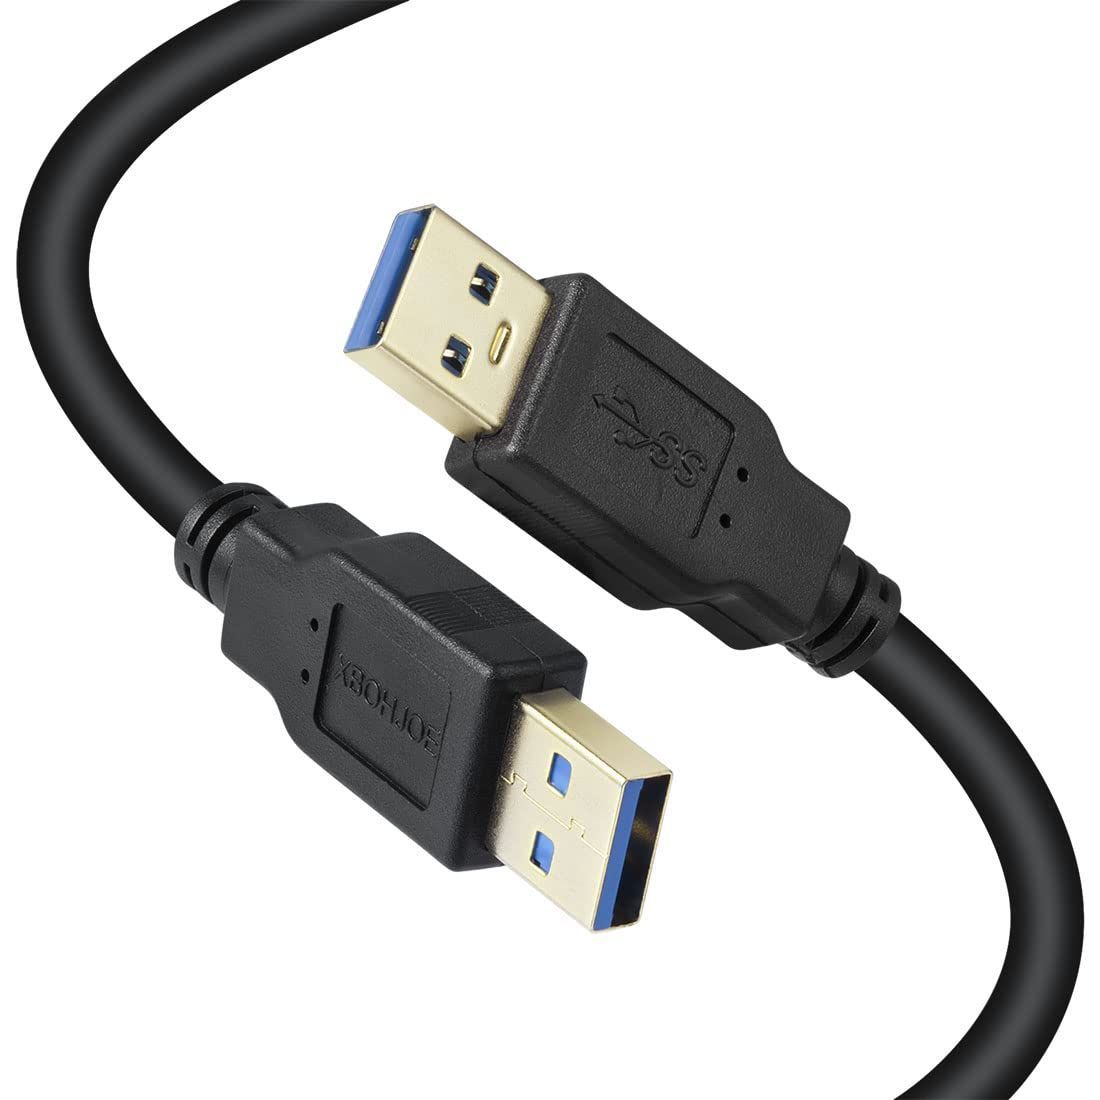 UGREEN USB 3.0 ケーブル タイプA-タイプA オス-オス 金メッキコネクタ搭載 高耐久性 USBケーブル 両端